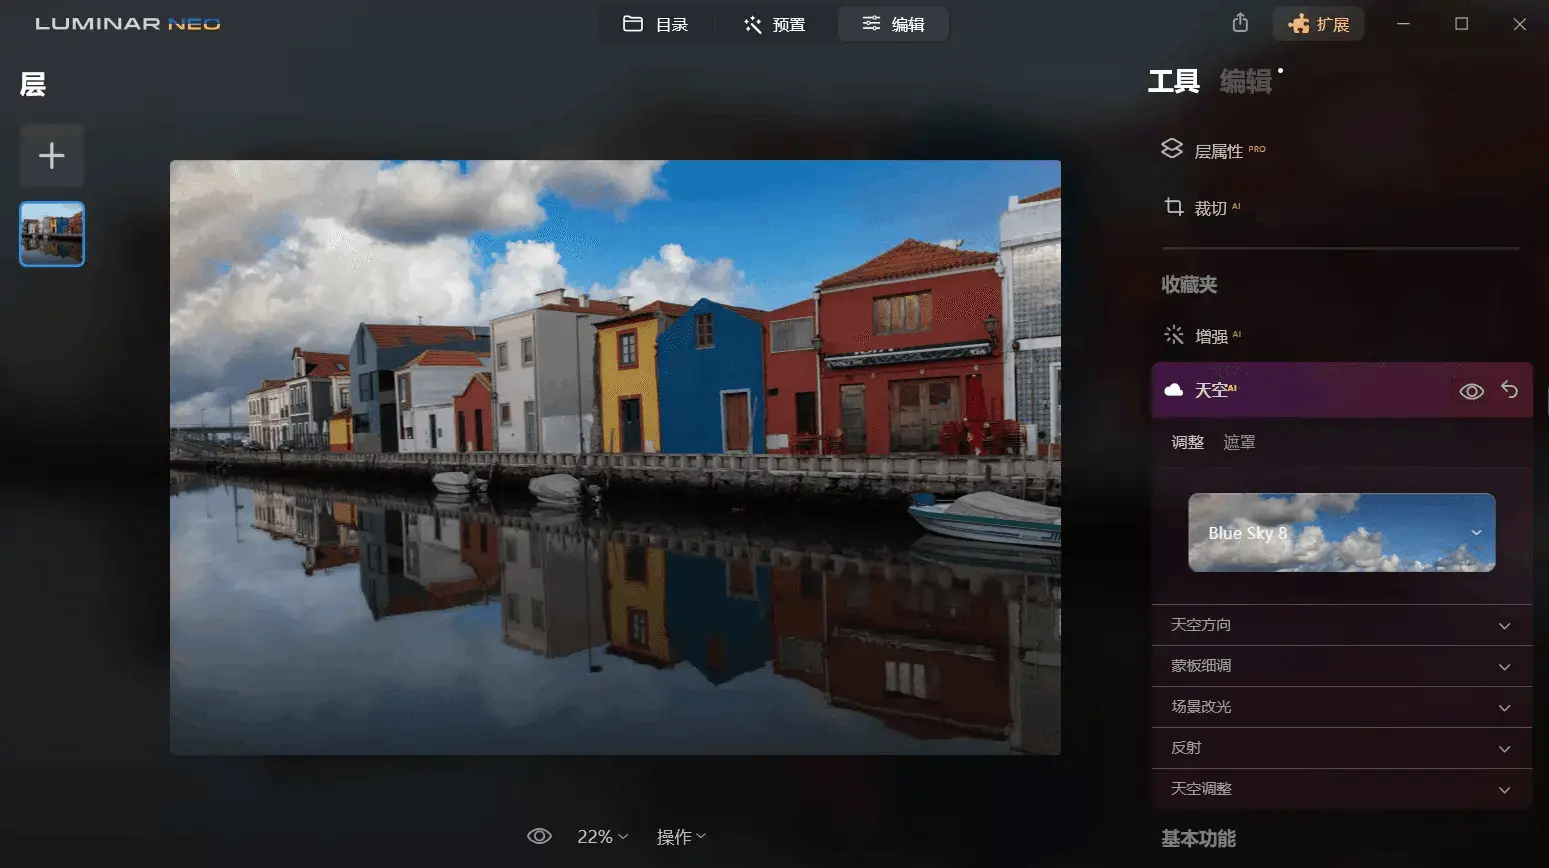 Luminar Neo v1.18.0 一款AI人工智能图像处理工具，绿色便携中文解锁版